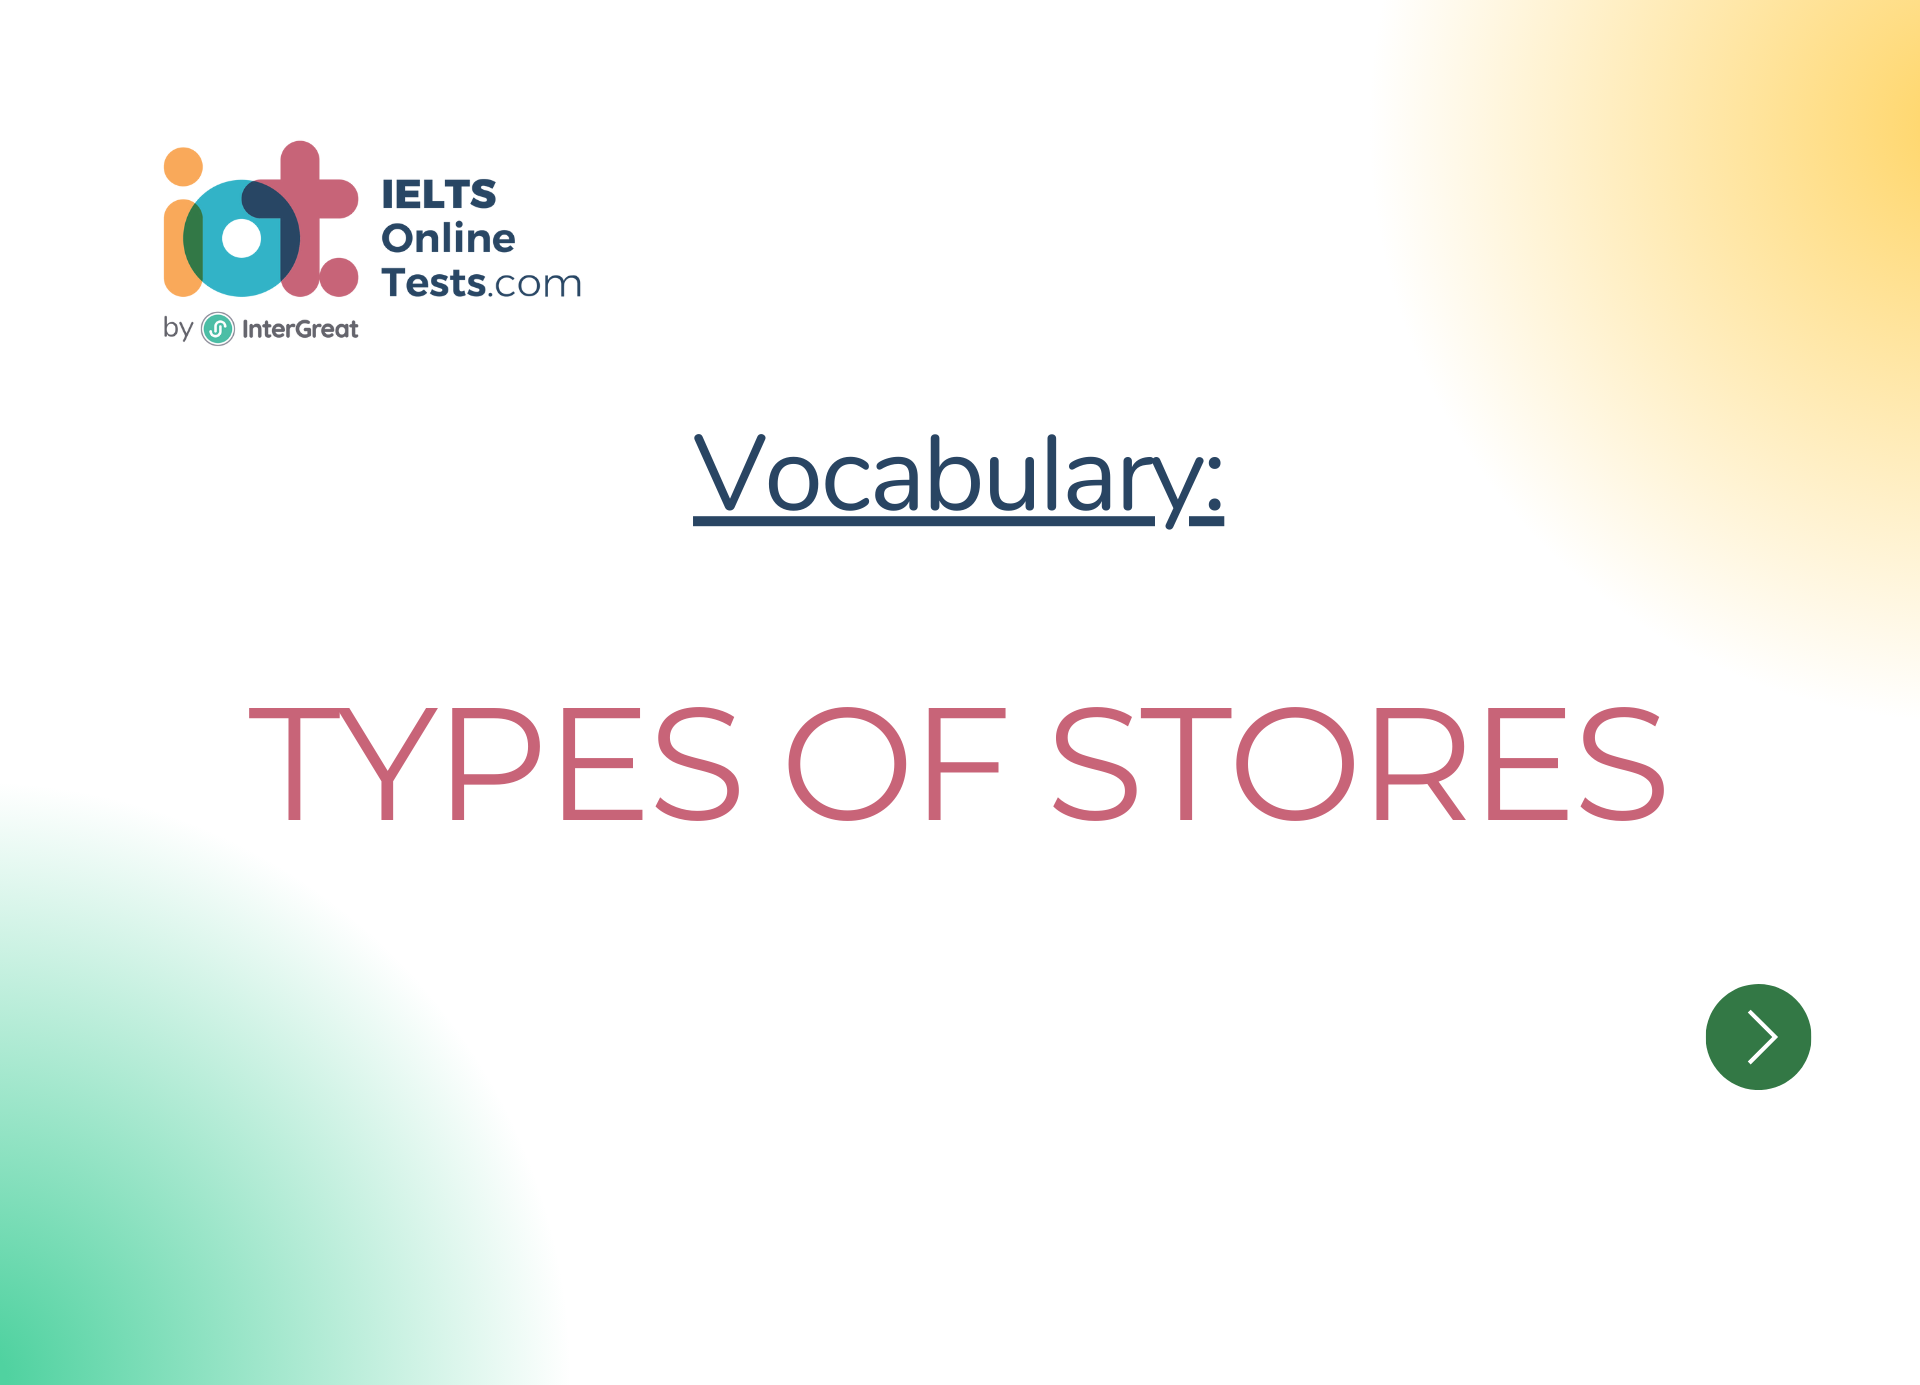 Các loại cửa hàng (Types of stores)